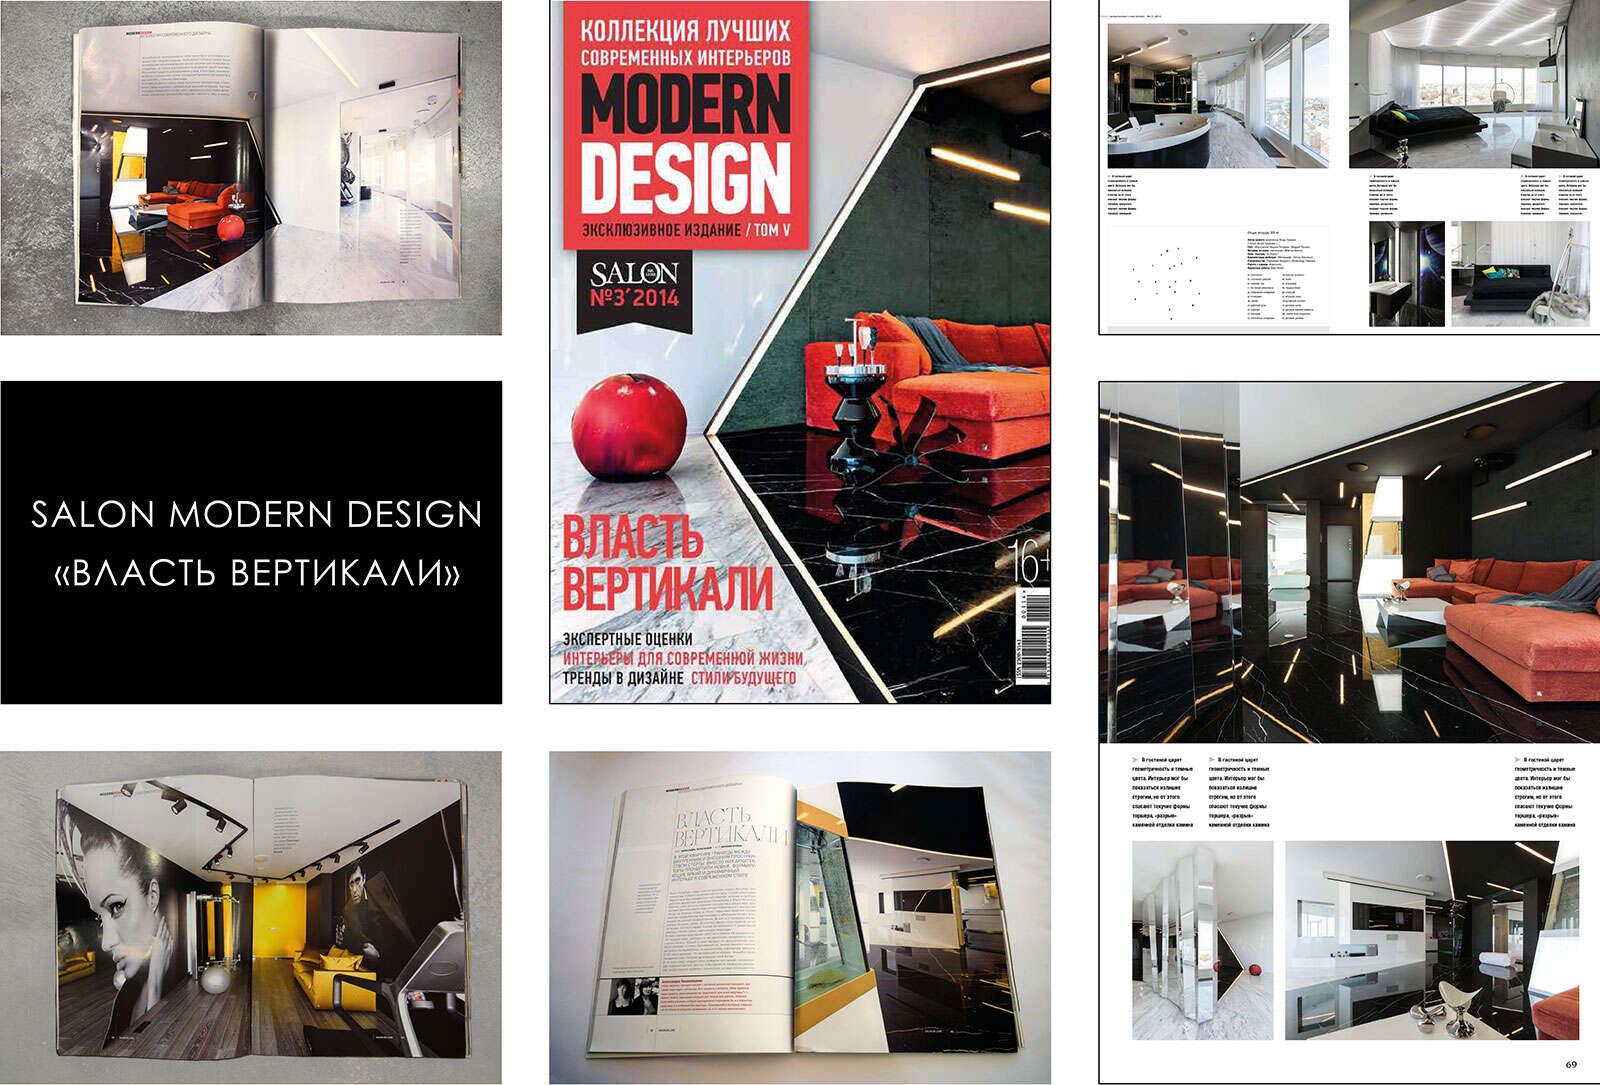 Коллекция лучших современных интерьеров. Modern Design №3 2014